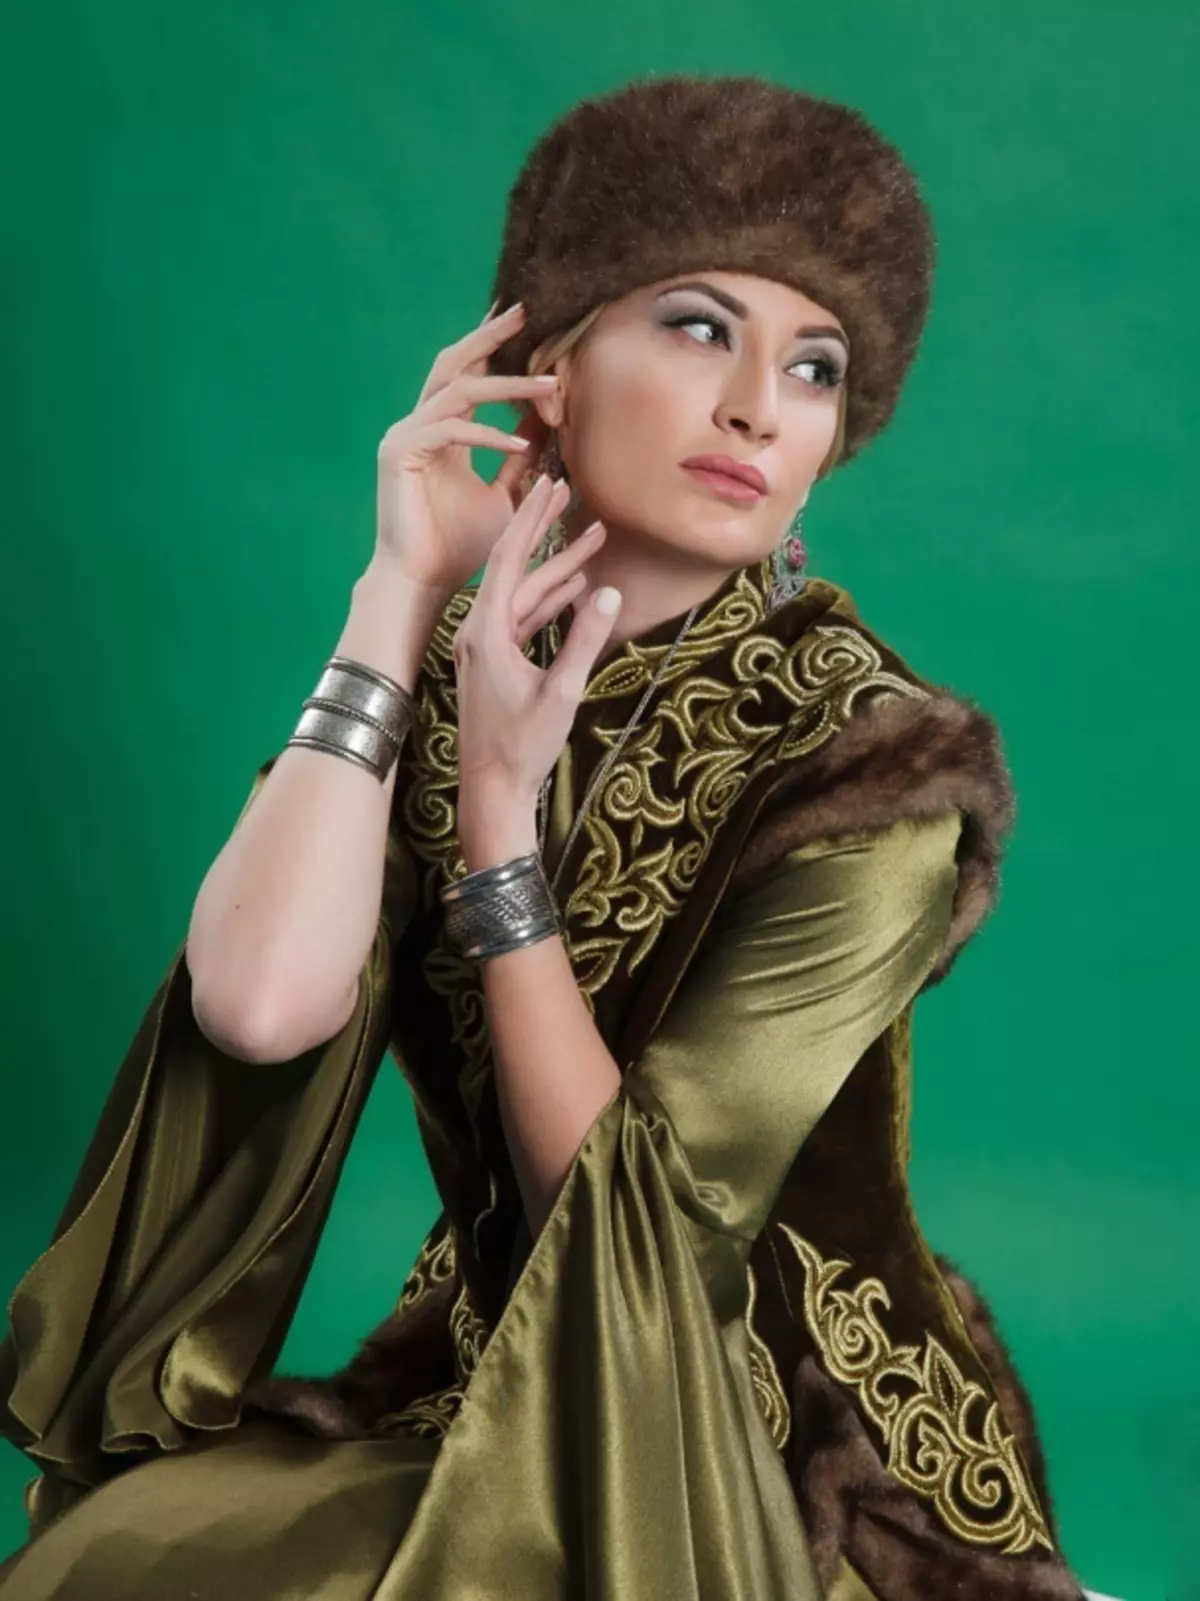 Ղազախստանի ազգային զգեստ (68 լուսանկար). Կանացի ավանդական զգեստներ Ղազախստանում, Ղազախստանից աղջկա ժողովրդական հանդերձանք 842_8